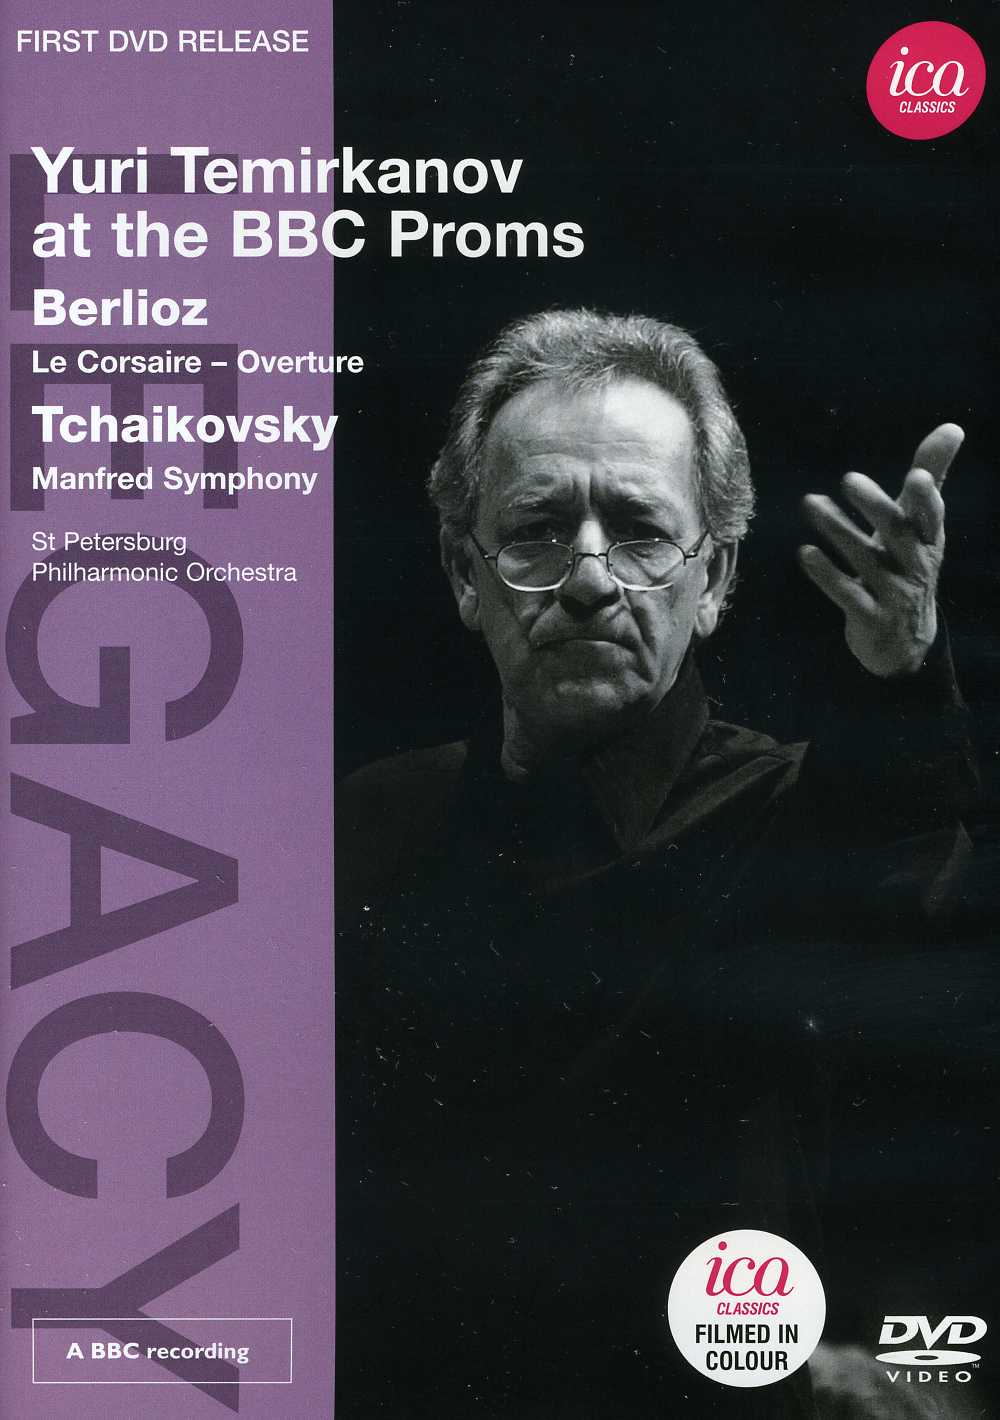 LEGACY: YURI TEMIRKANOV AT BBC PROMS